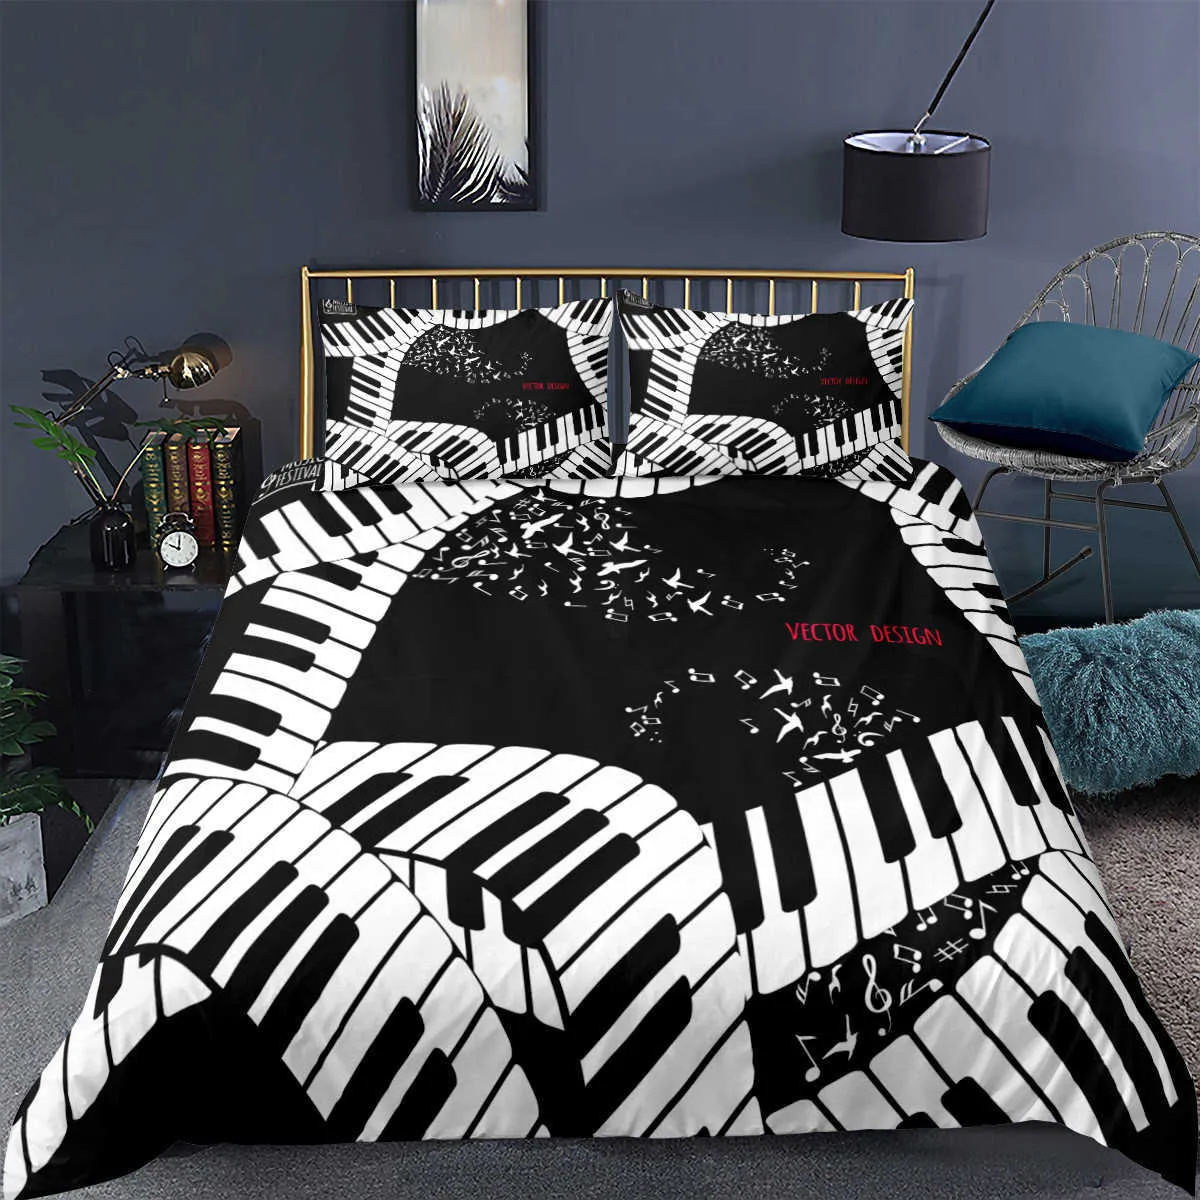 Juego de cama con estampado de notas musicales de Piano, juego de cama de lujo en 3D, edredones, funda de edredón para adultos y niños, funda de almohada, tamaño Twin Queen King H0913